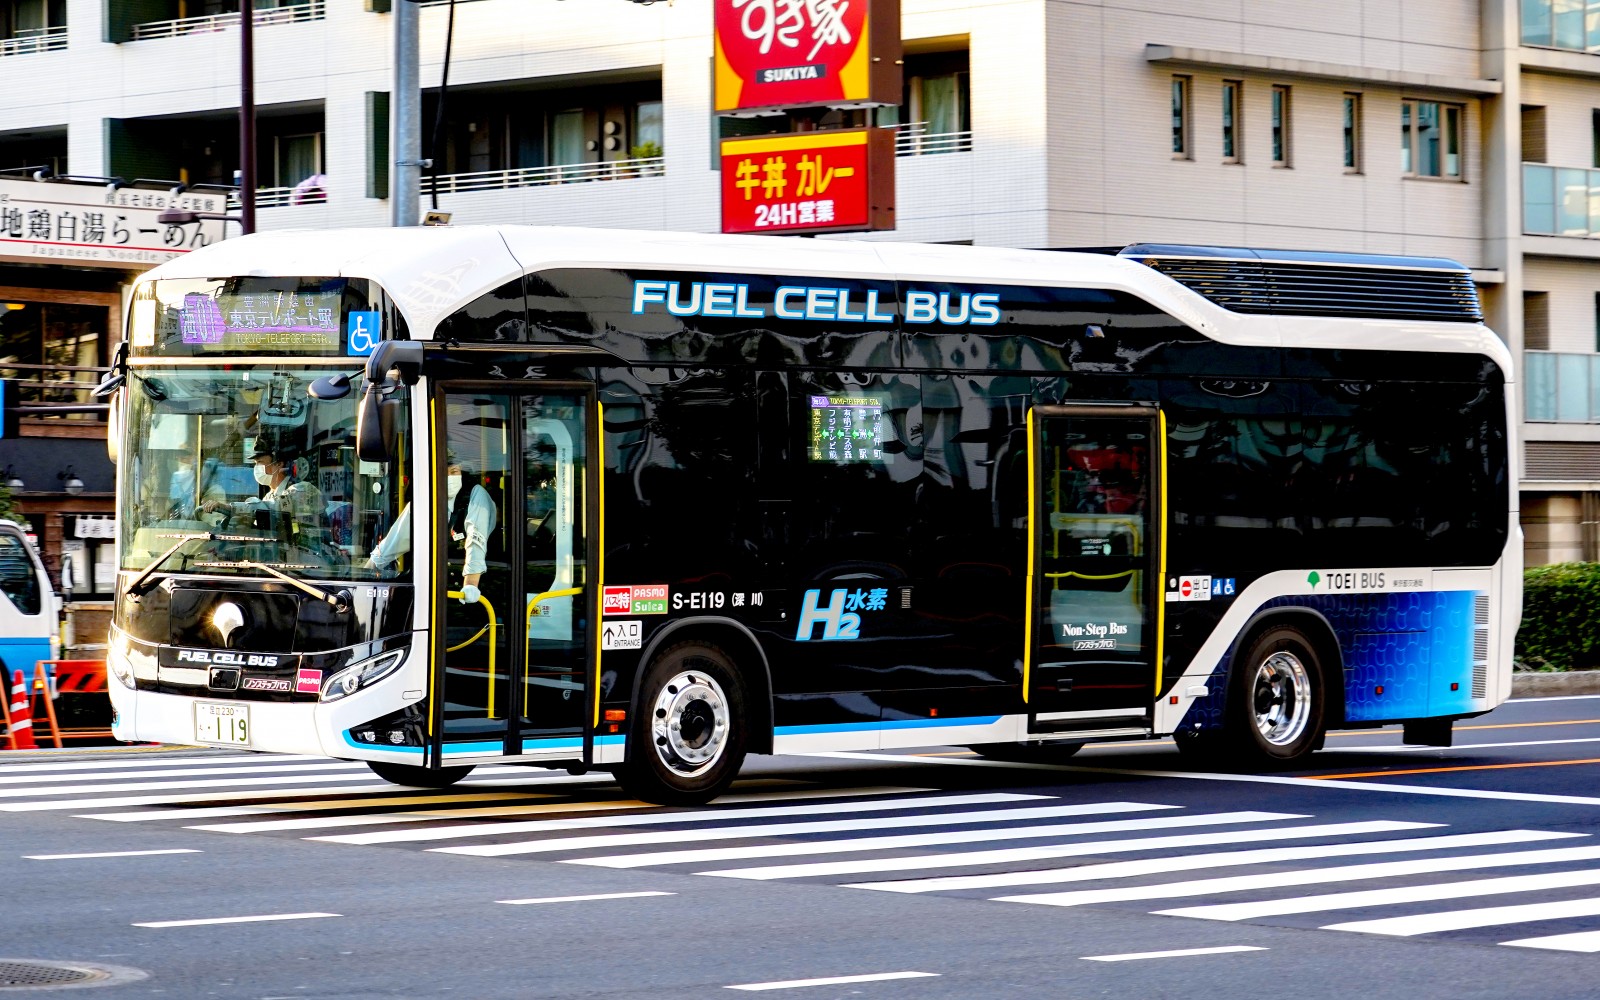 令和元年度(E代) 燃料電池の新車導入(3/9現在) | 都営バス資料館